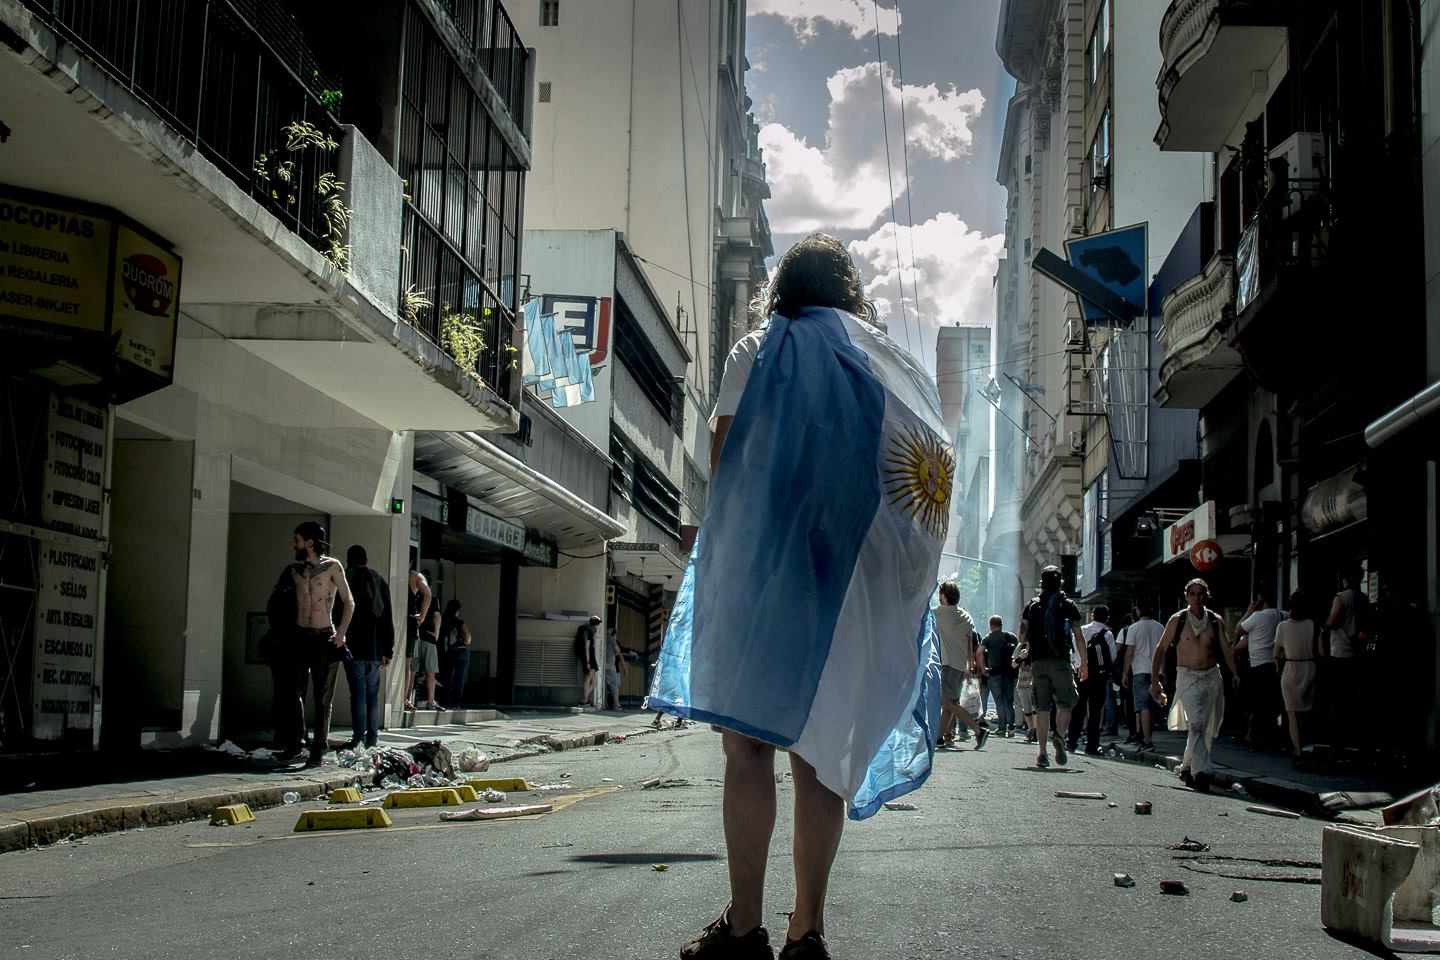 Fotografías que protestan: el conflicto social en Argentina a través de imágenes